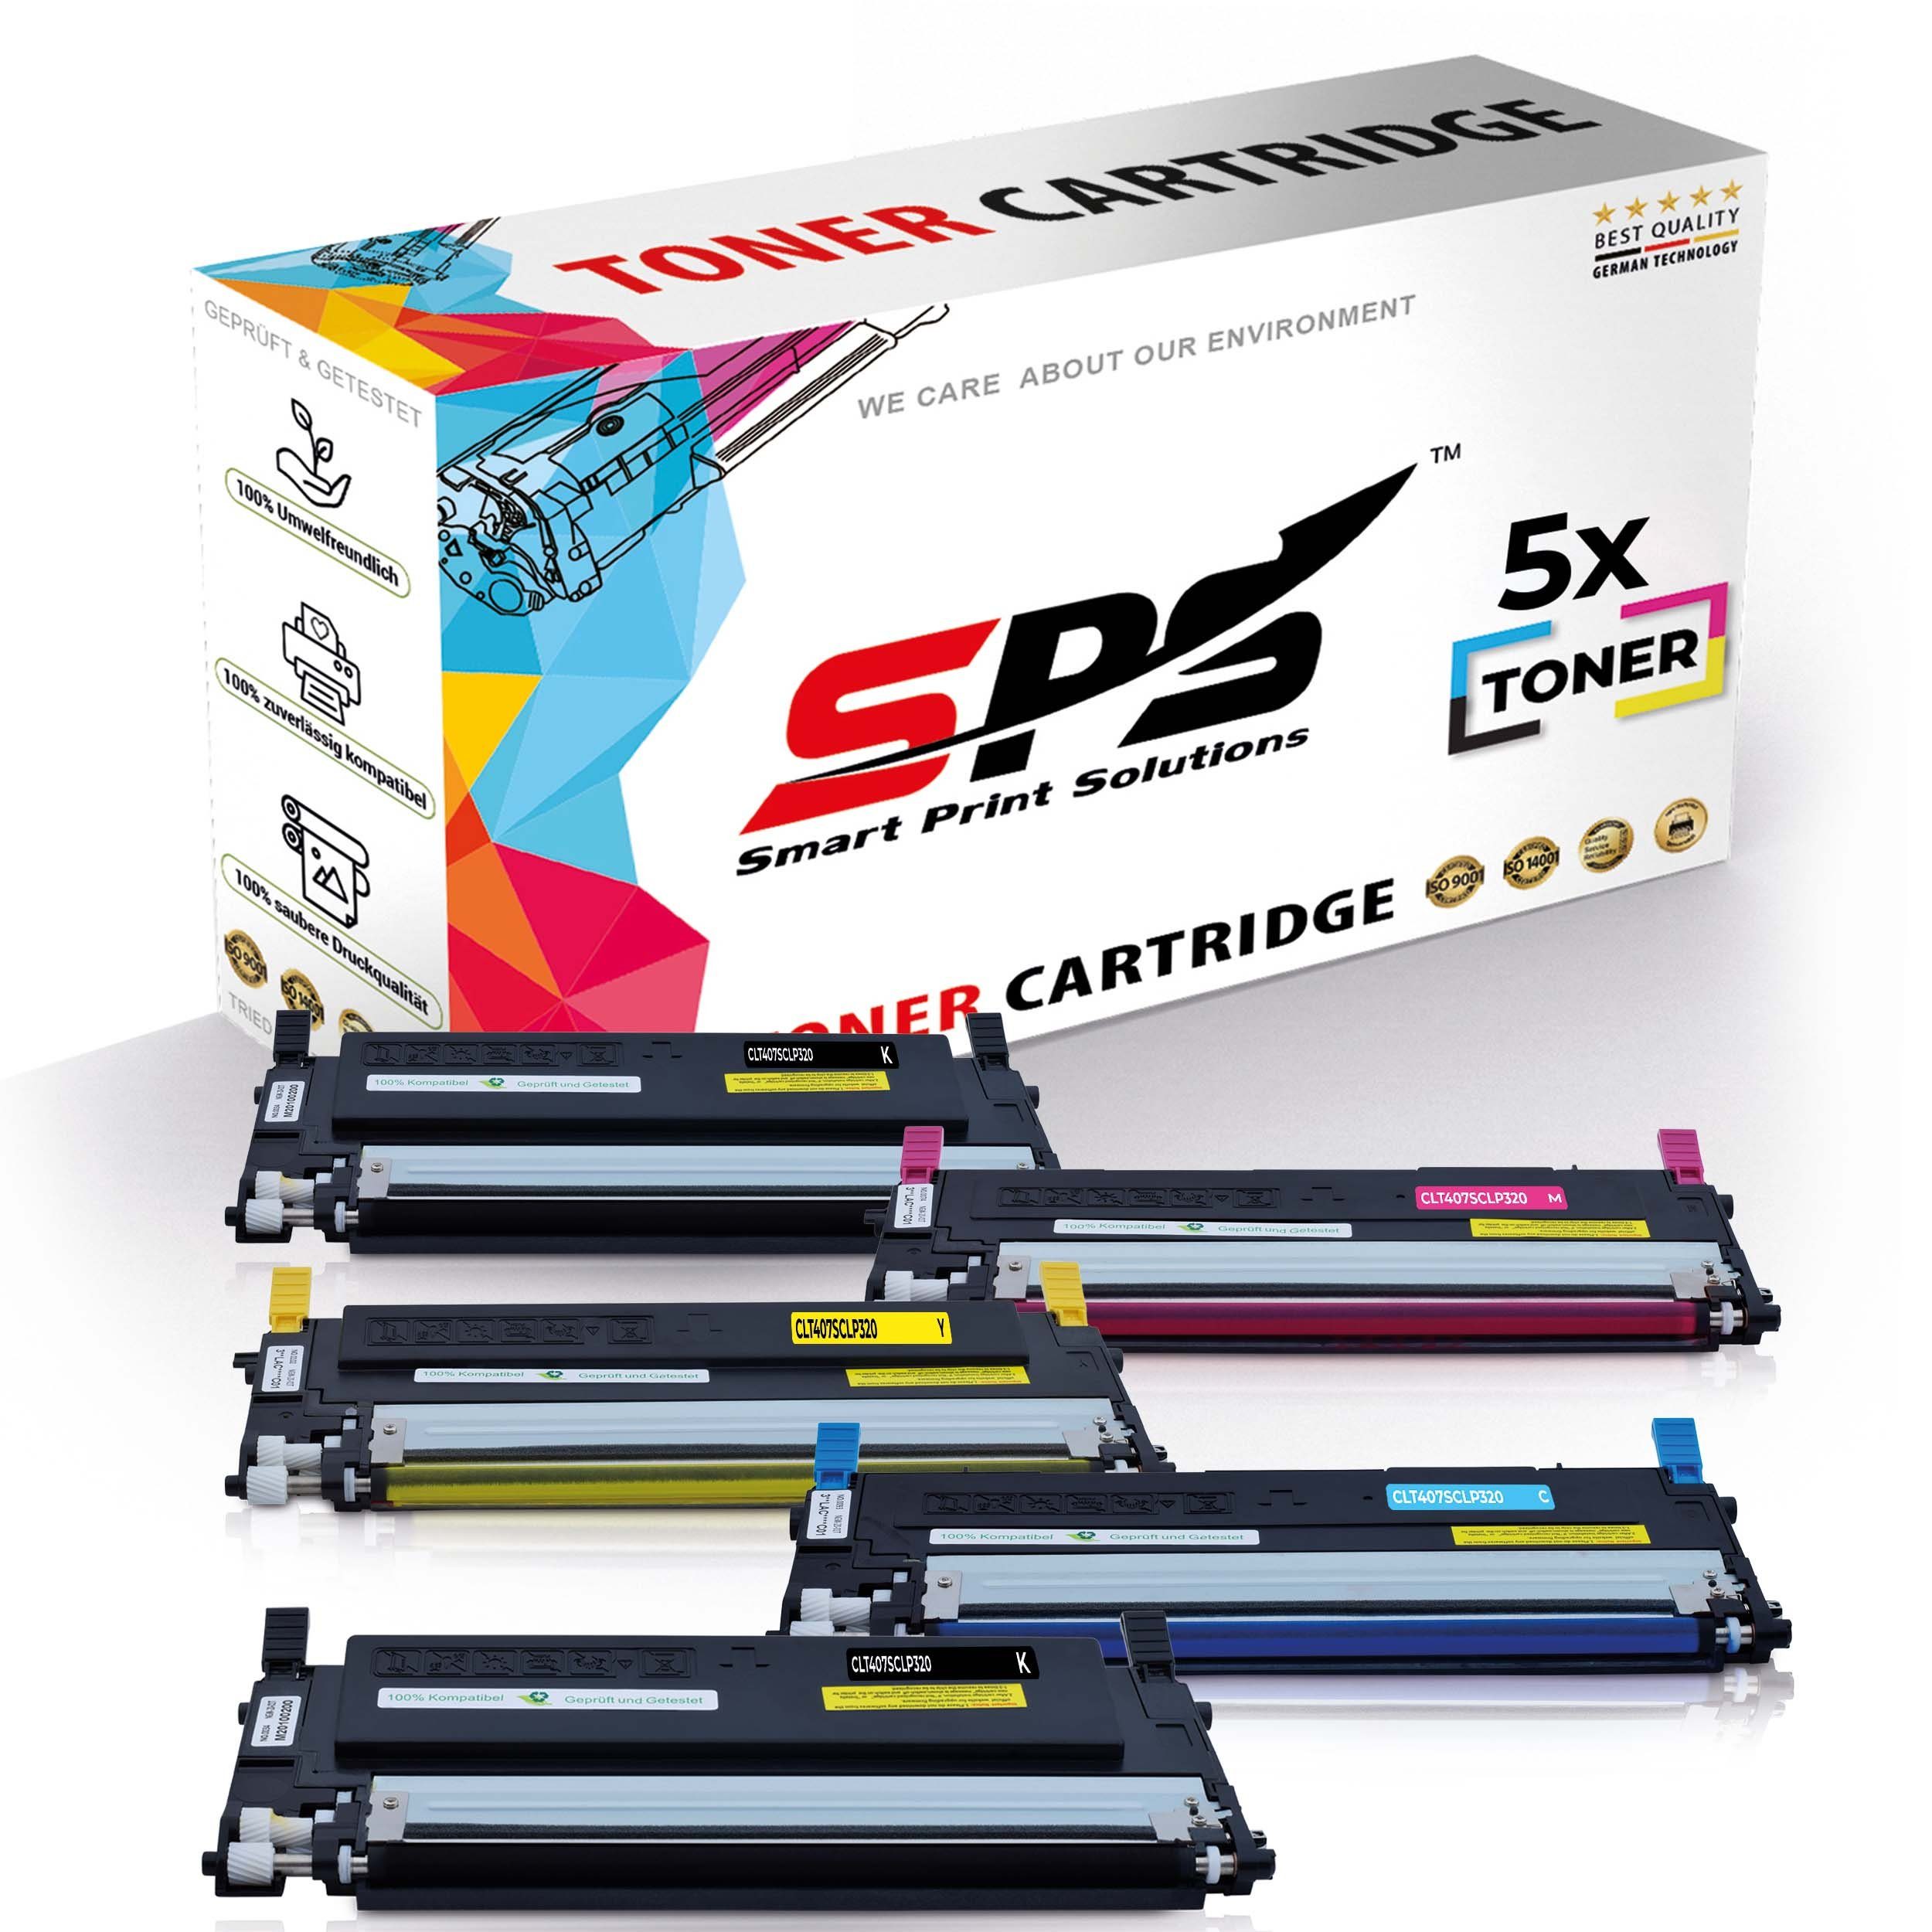 SPS Tonerkartusche Kompatibel für Samsung CLT-C407S, C407 (5er CLP-325N Pack)